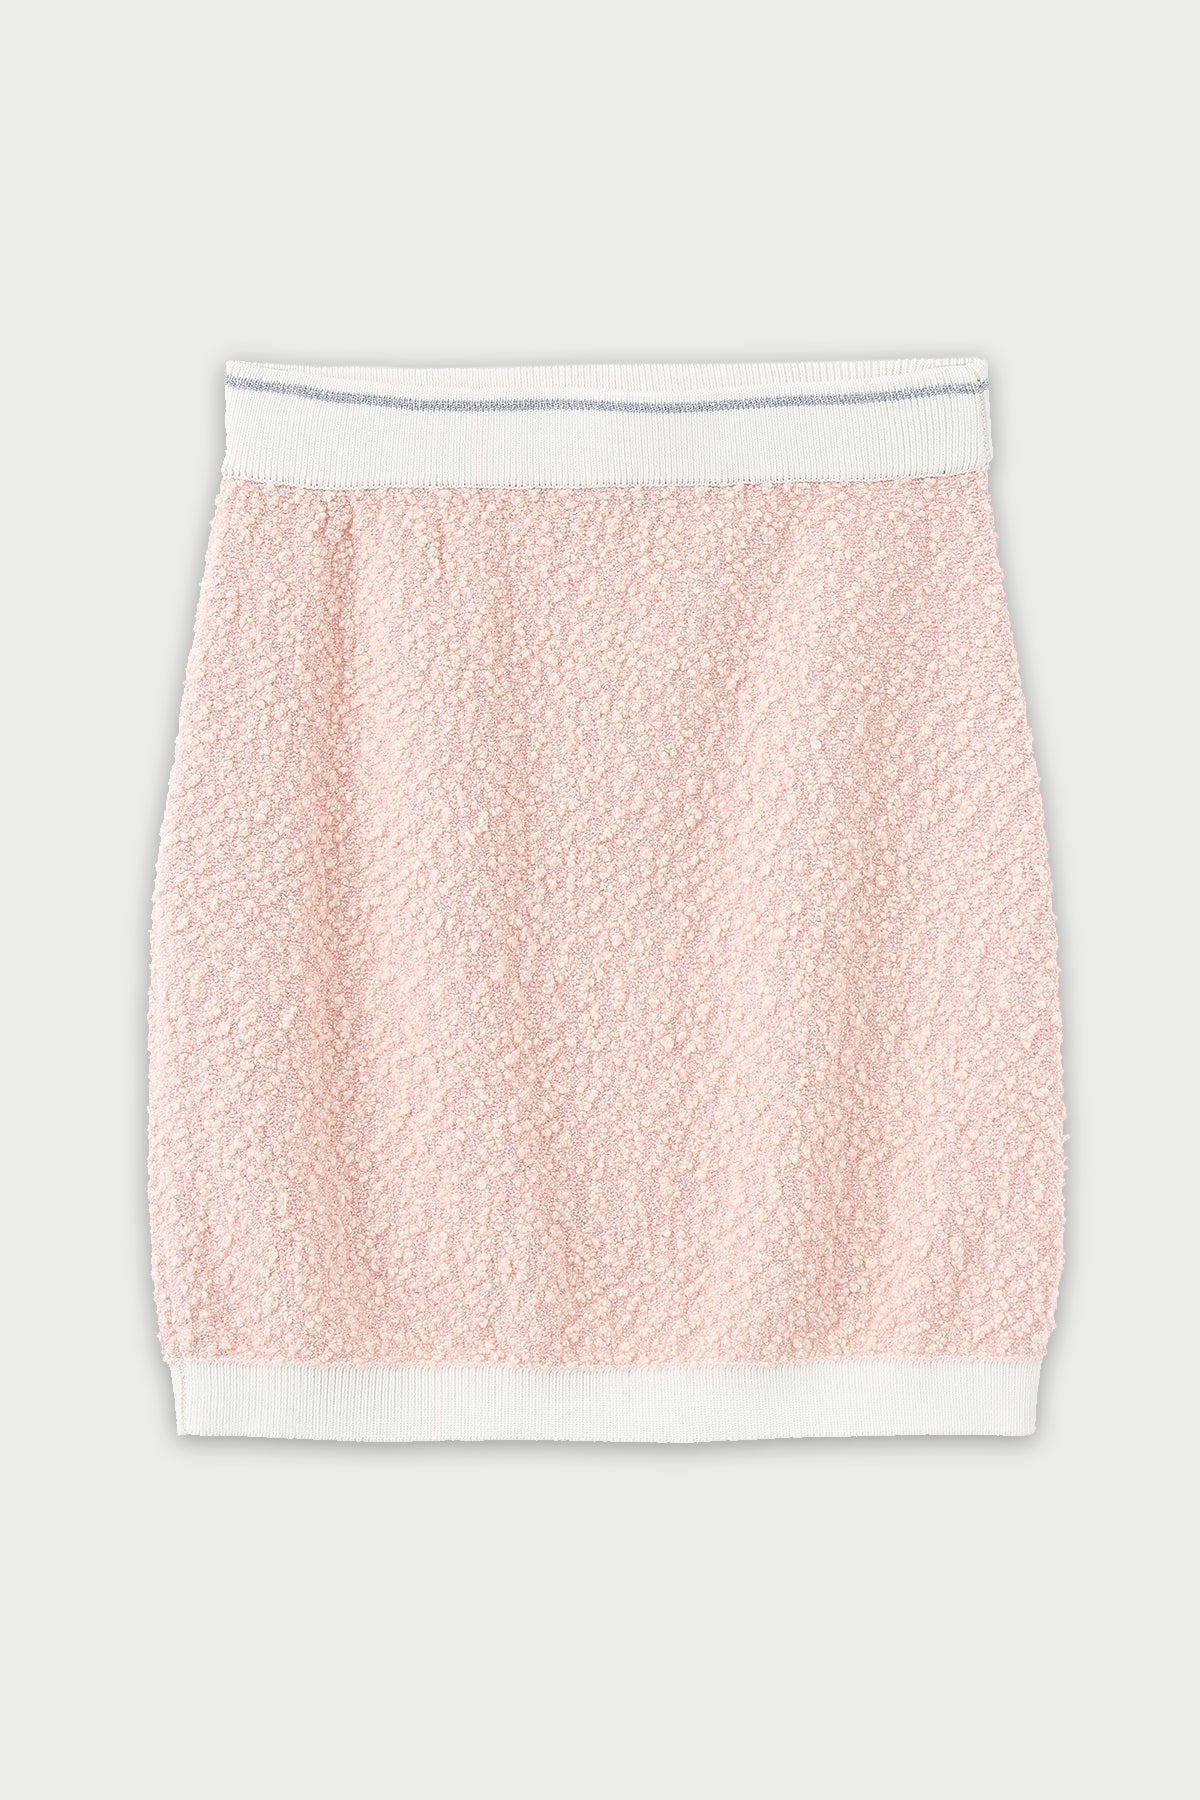 ZI II CI IEN | Misty Rose Knit Skirt